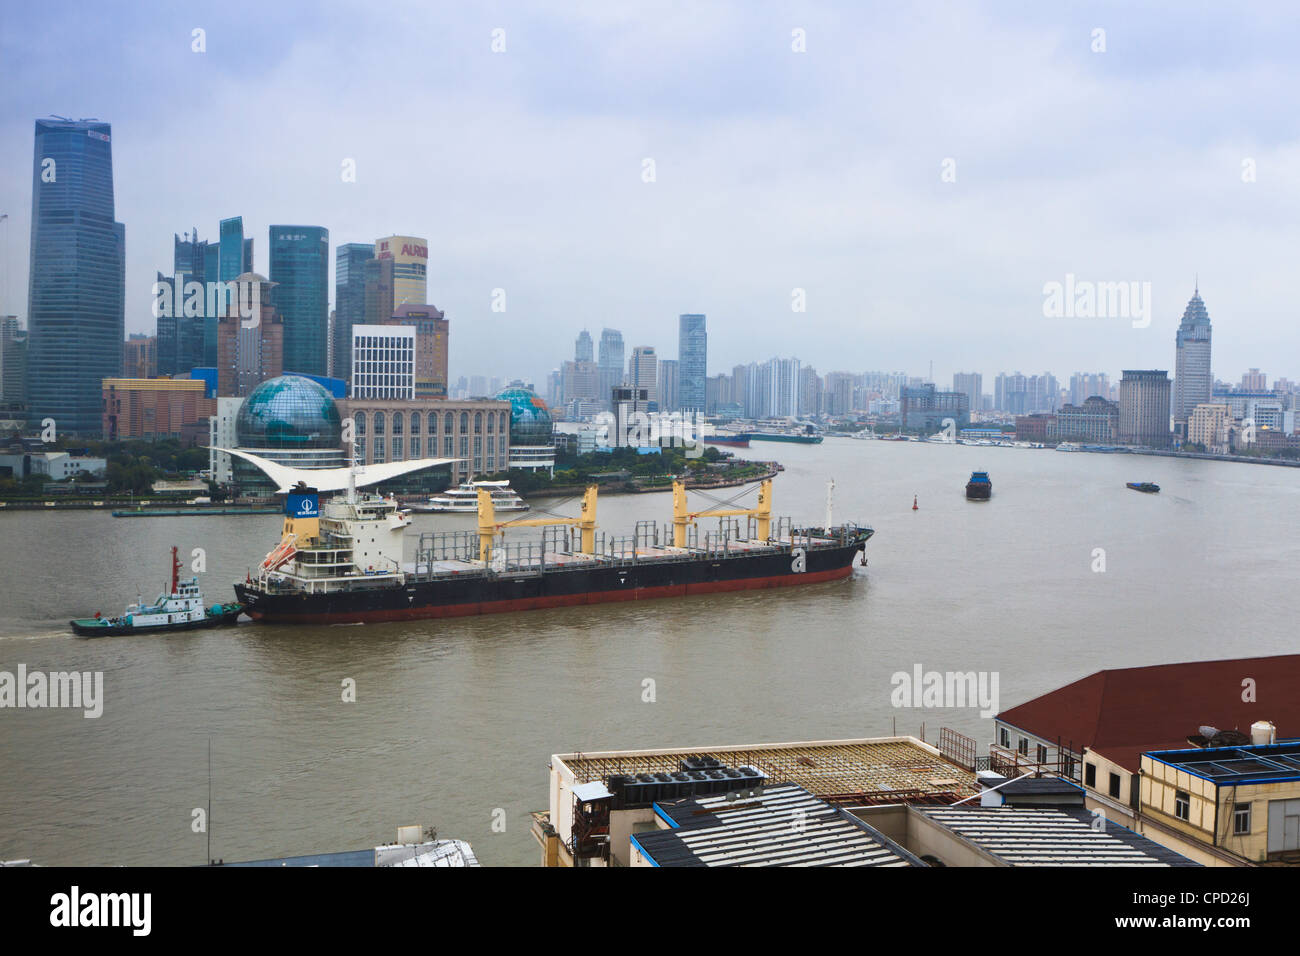 Des navires et des remorqueurs de transport sur le fleuve Huangpu qui traverse Shanghai, Chine, Asie Banque D'Images